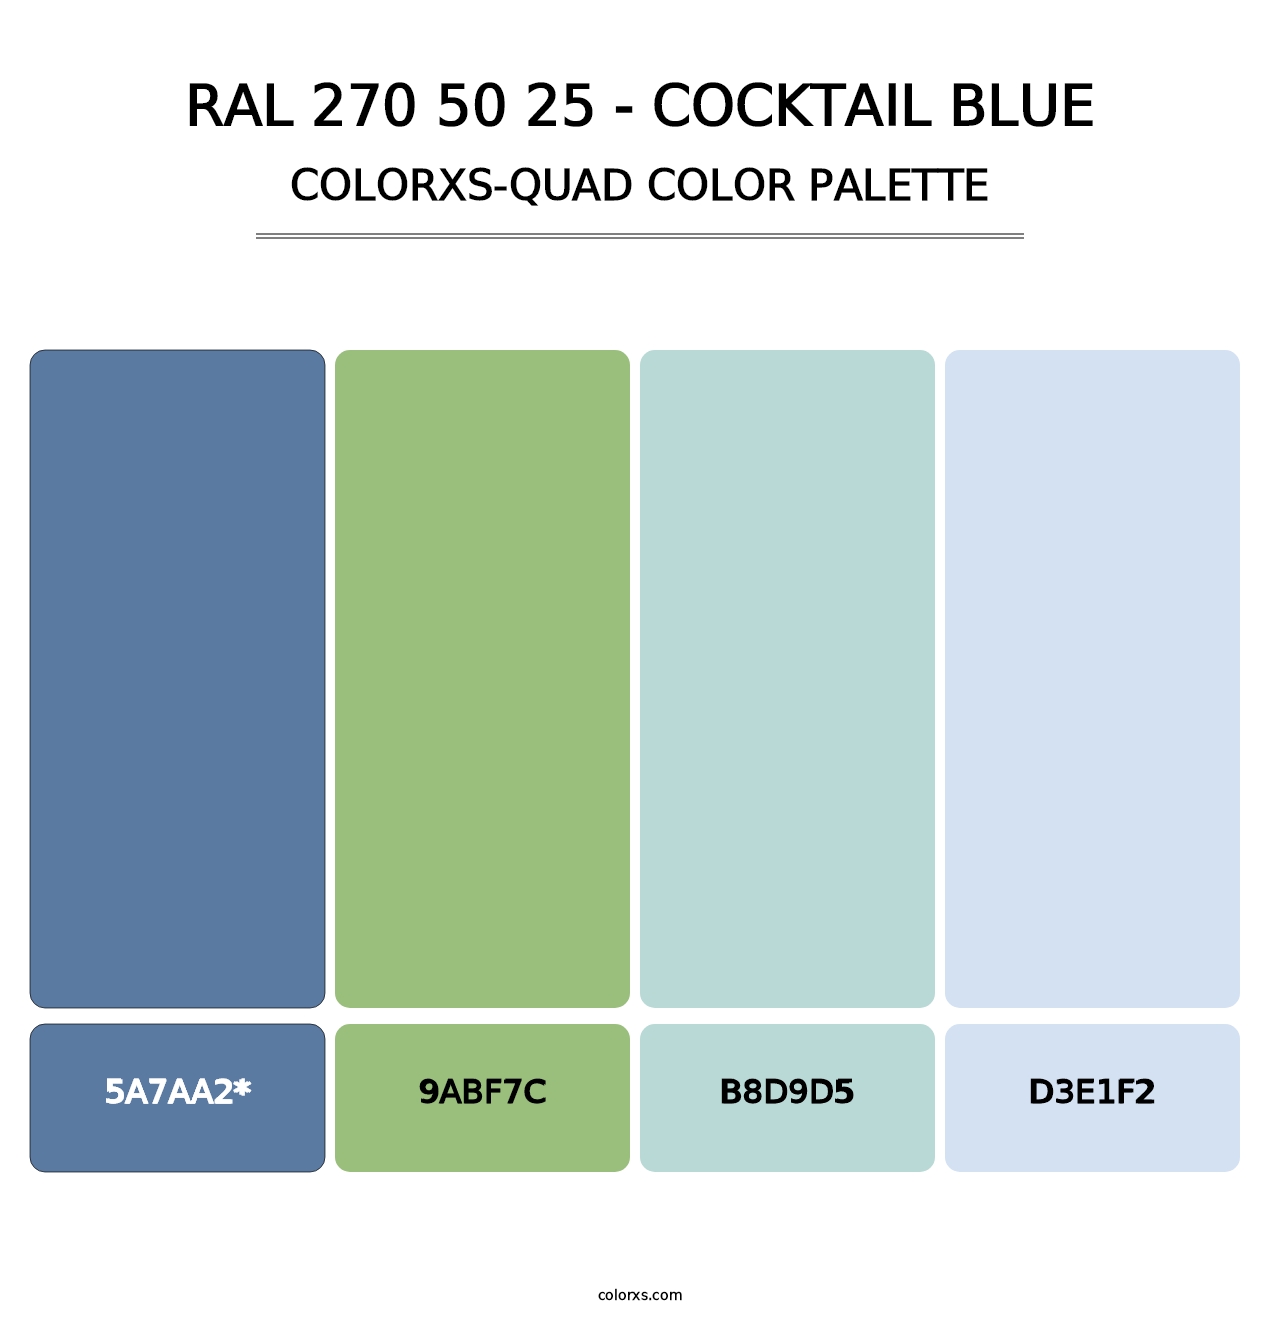 RAL 270 50 25 - Cocktail Blue - Colorxs Quad Palette